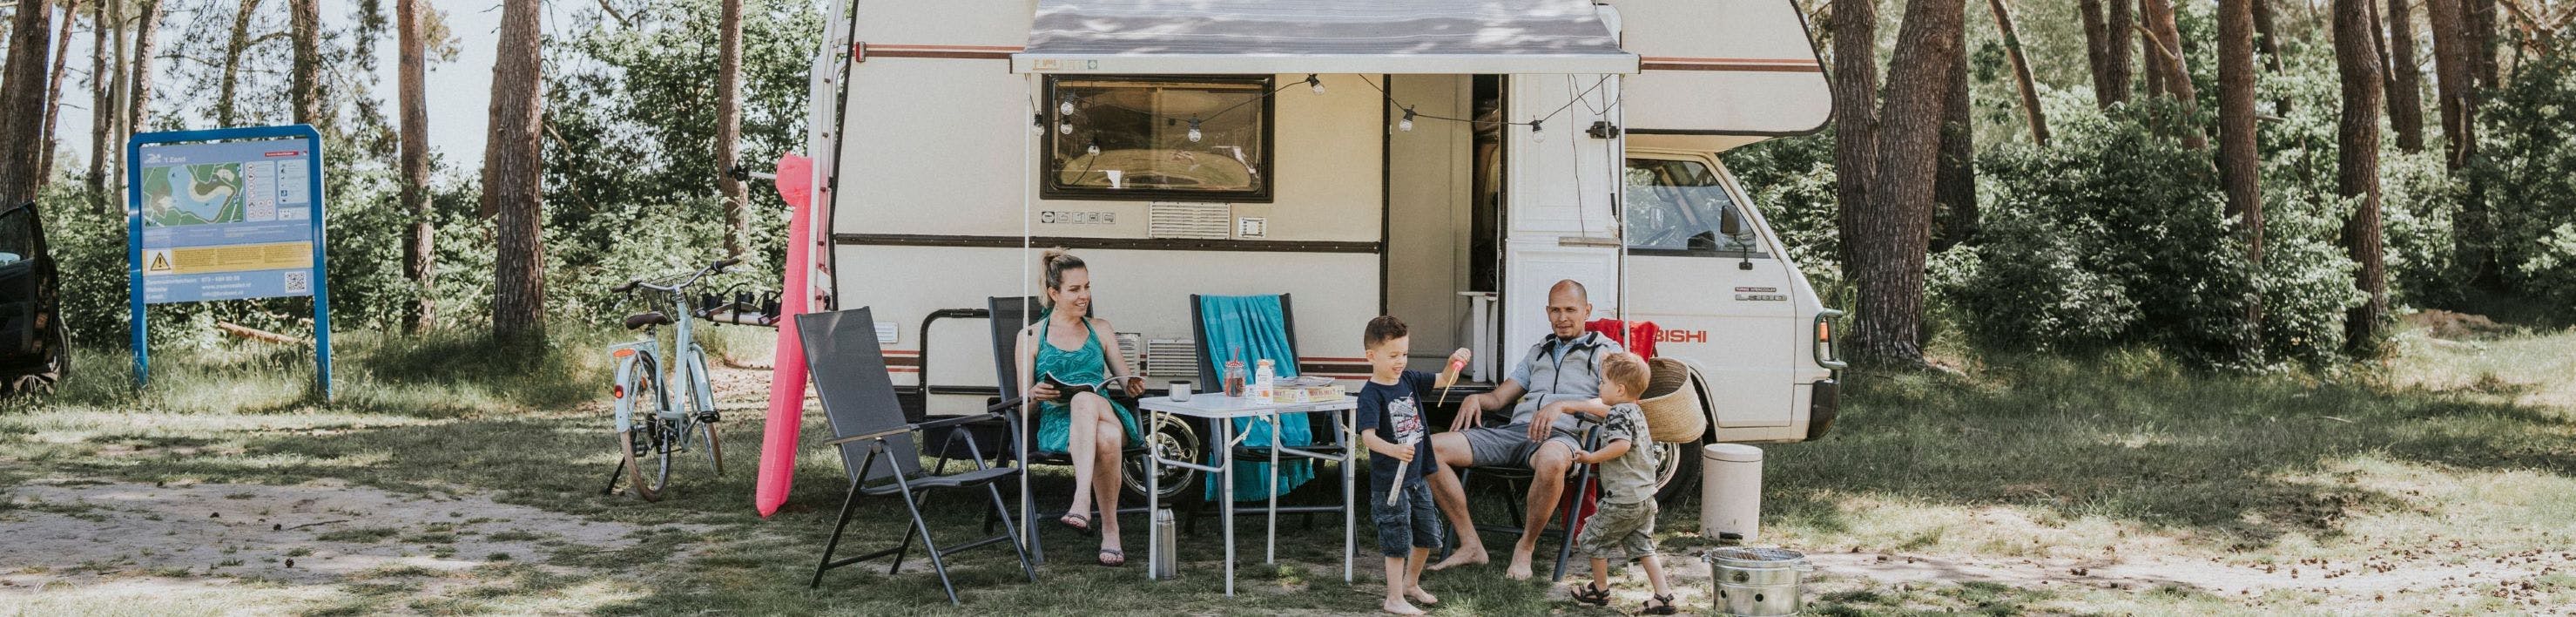 Een gezin zit voor de camper